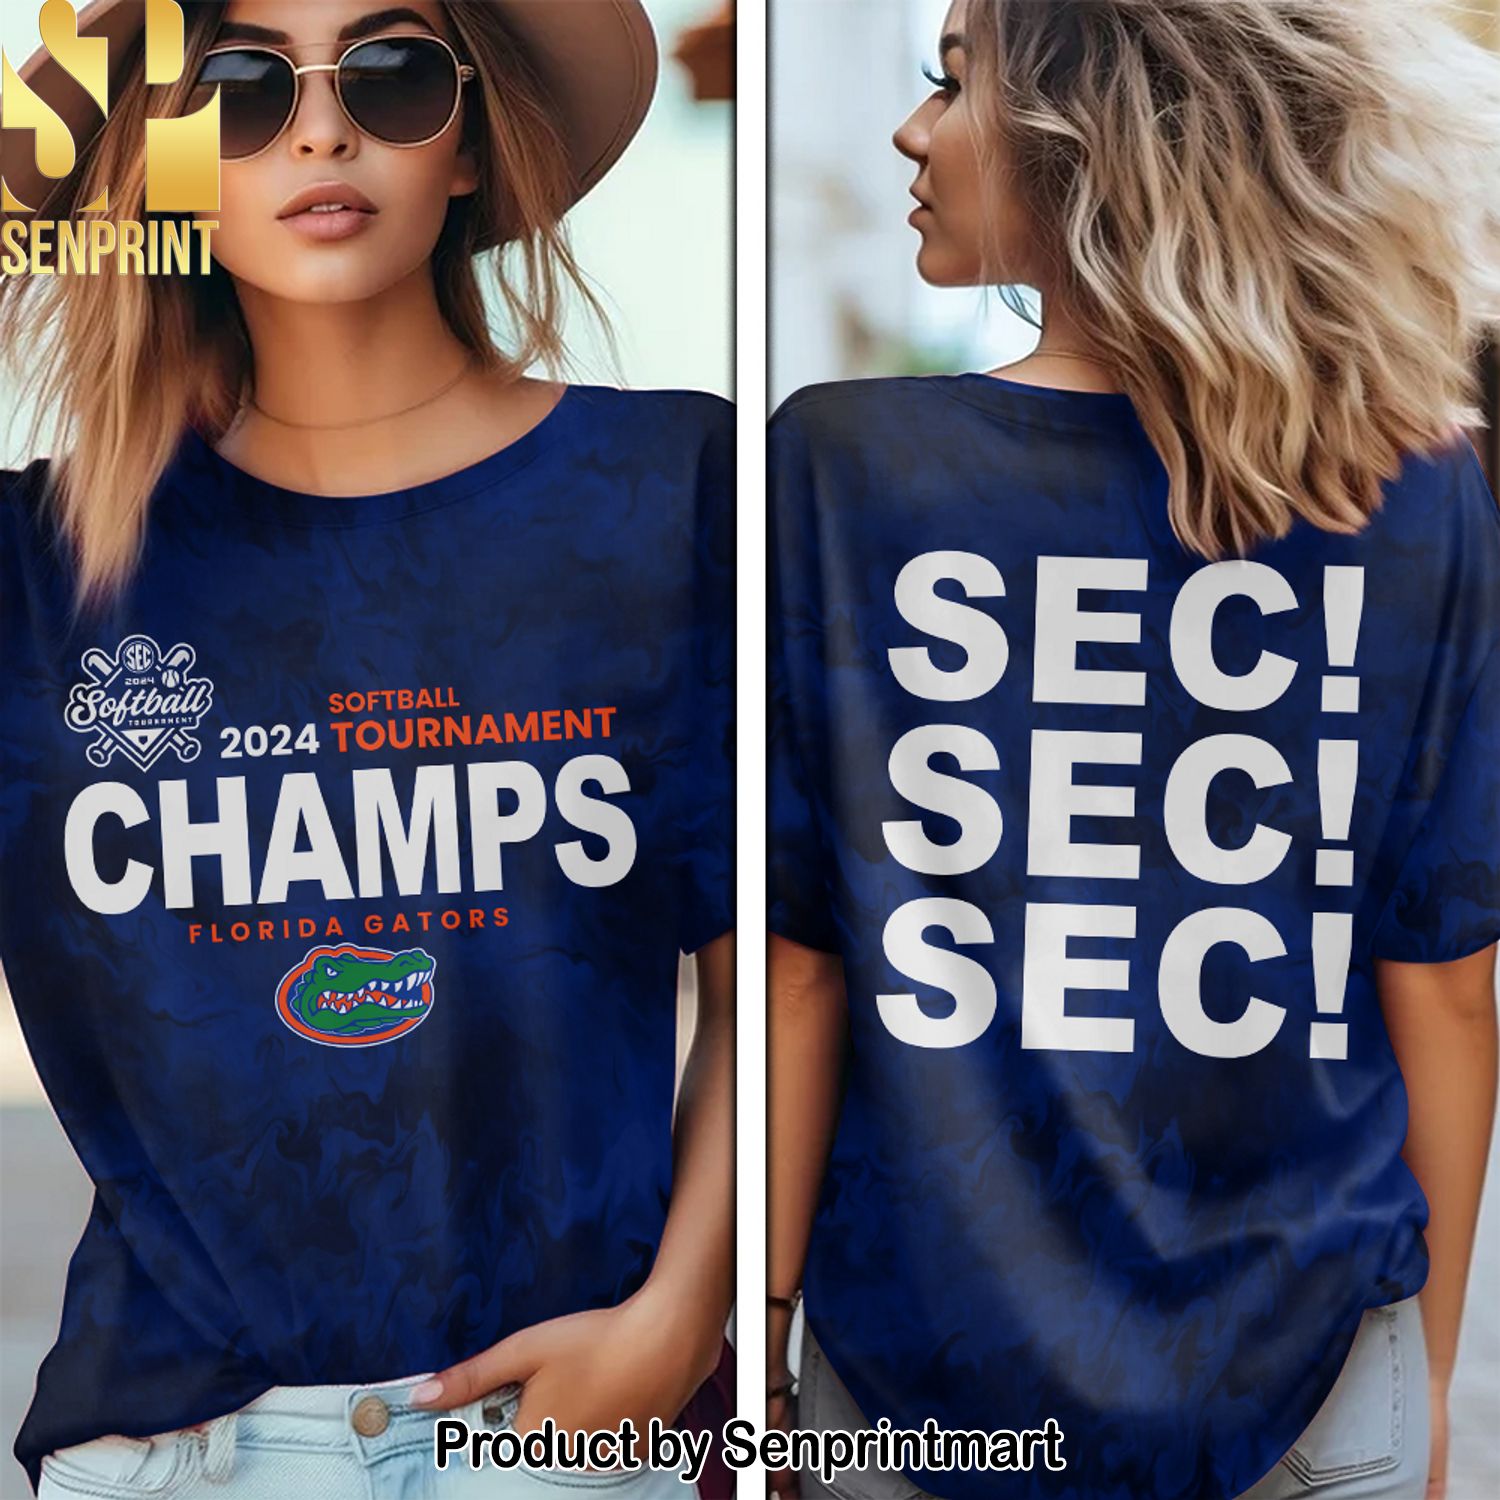 Florida Gators Softball Full Printing Shirt – SEN0034